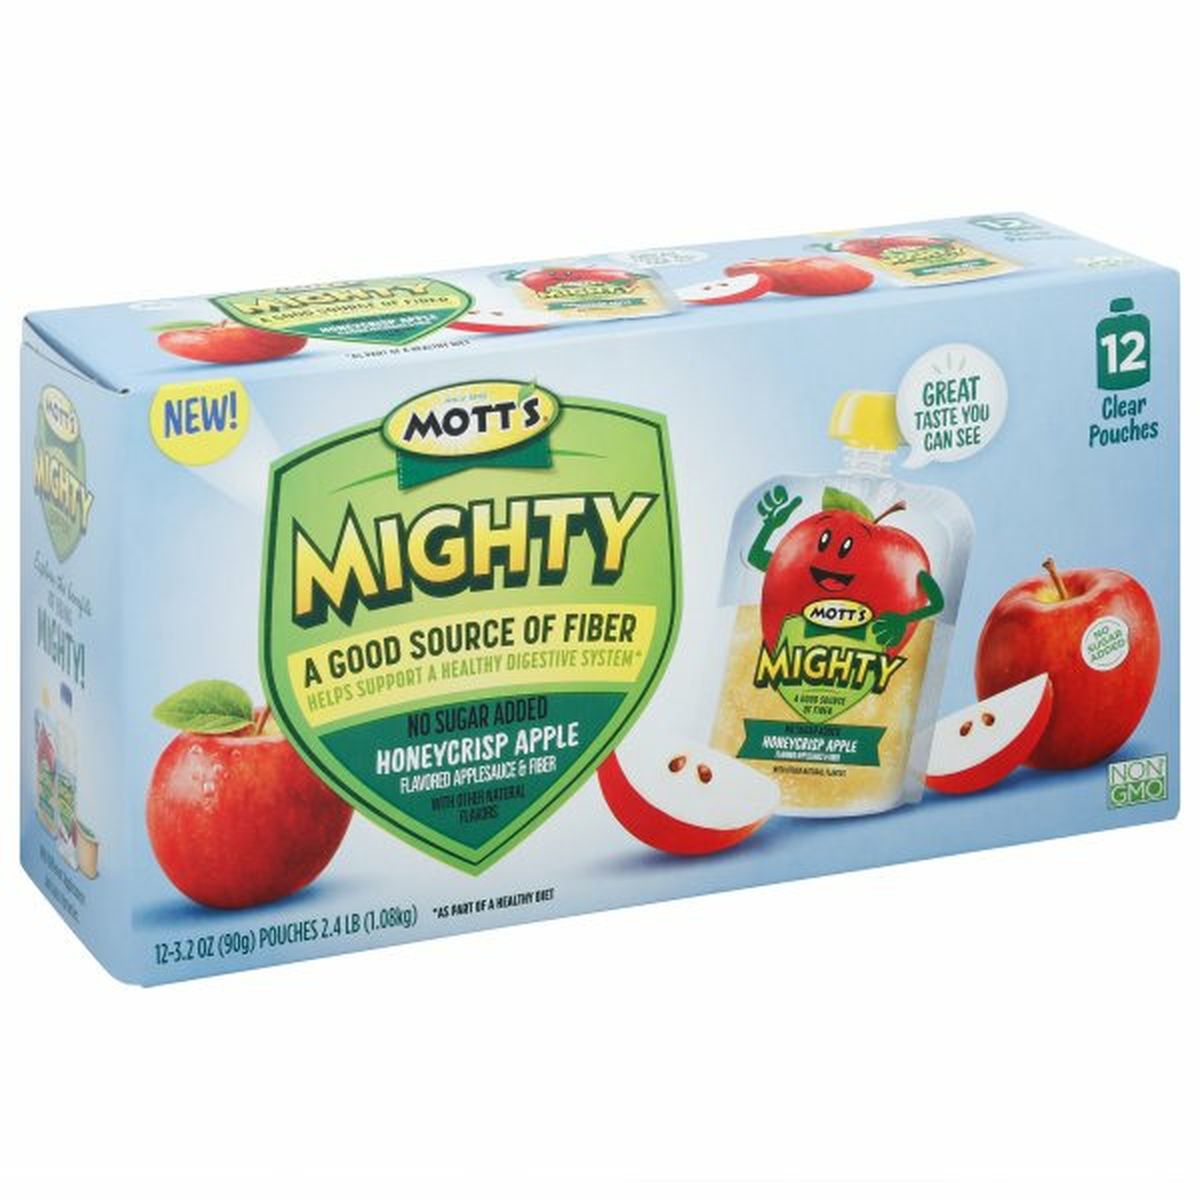 Calories in Mott's Mighty Mighty Applesauce & Fiber, Honeycrisp Apple